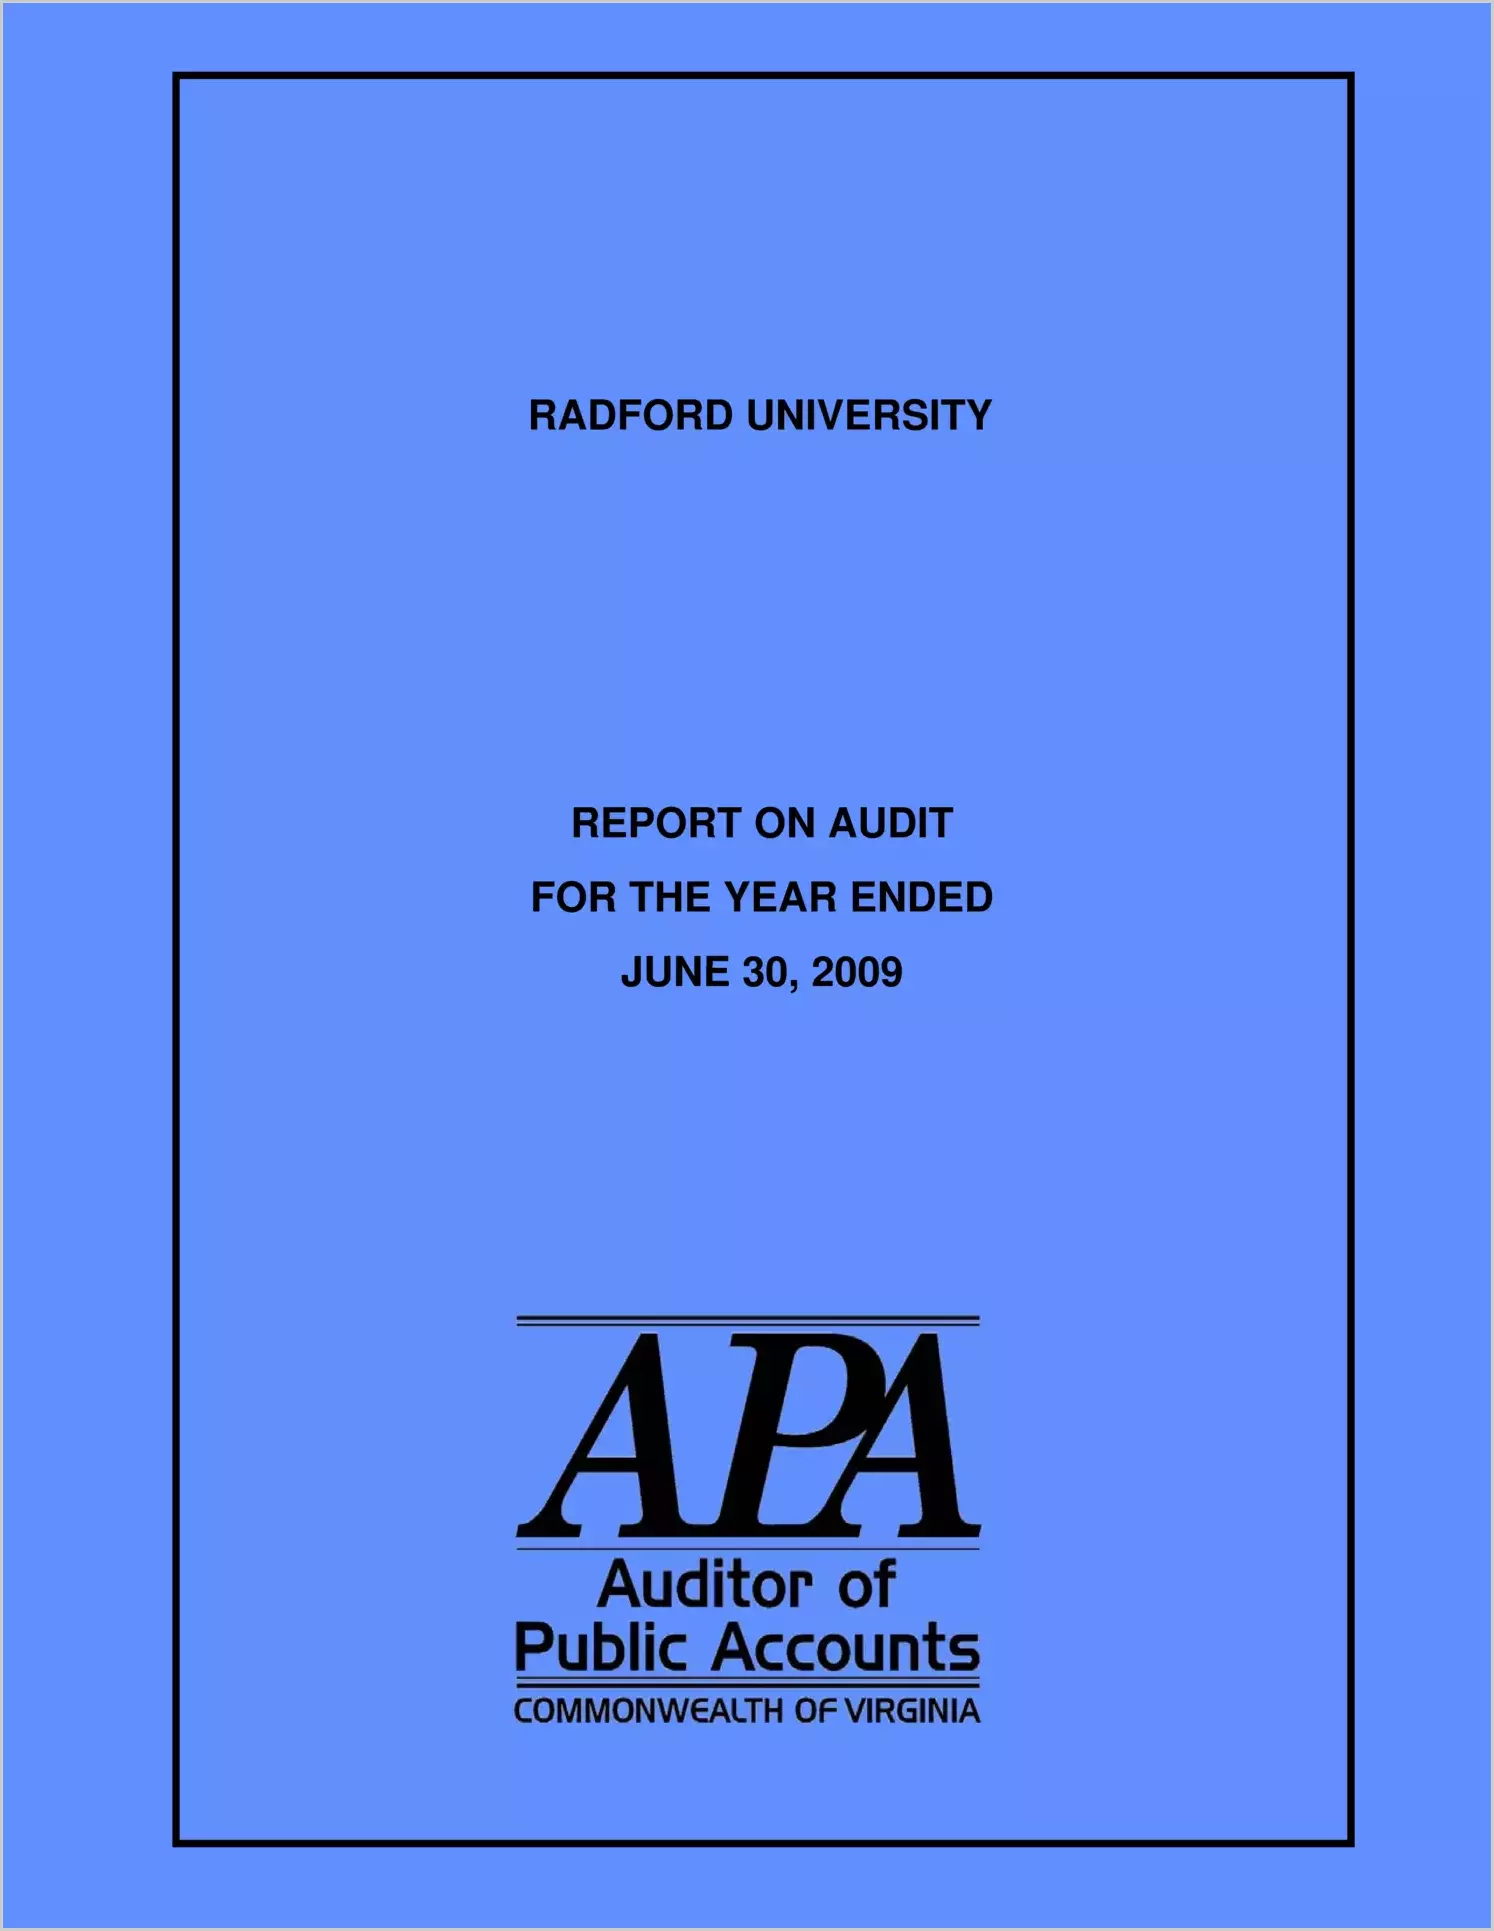 Radford University report on audit for year ending June 30, 2009